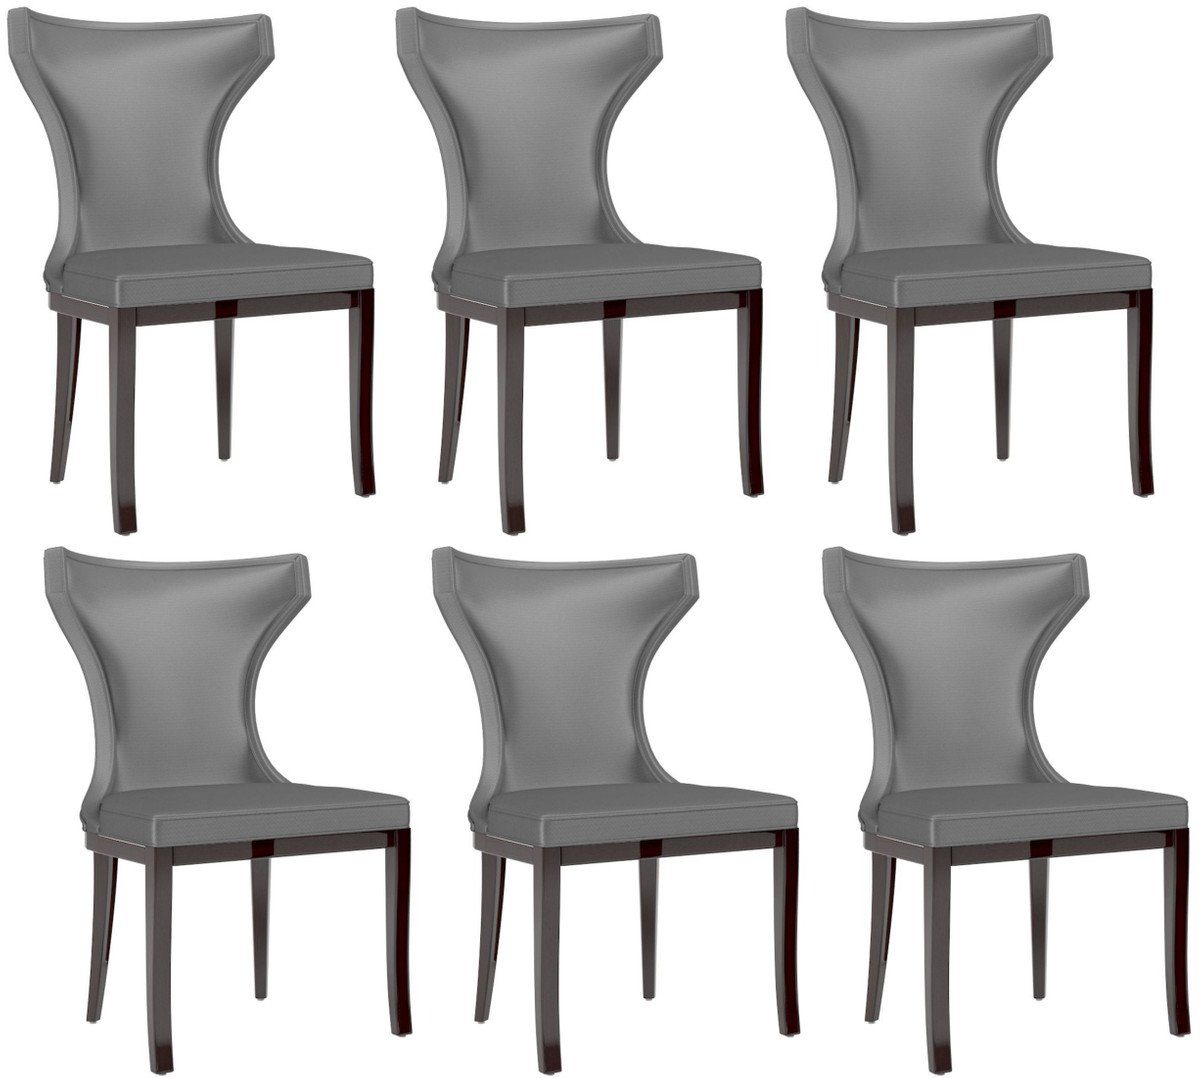 Casa Padrino Esszimmerstuhl Luxus Esszimmer Stuhl Set Silber / Dunkelbraun 50 x 50 x H. 90 cm - Edles Küchen Stühle 6er Set - Luxus Esszimmer Möbel